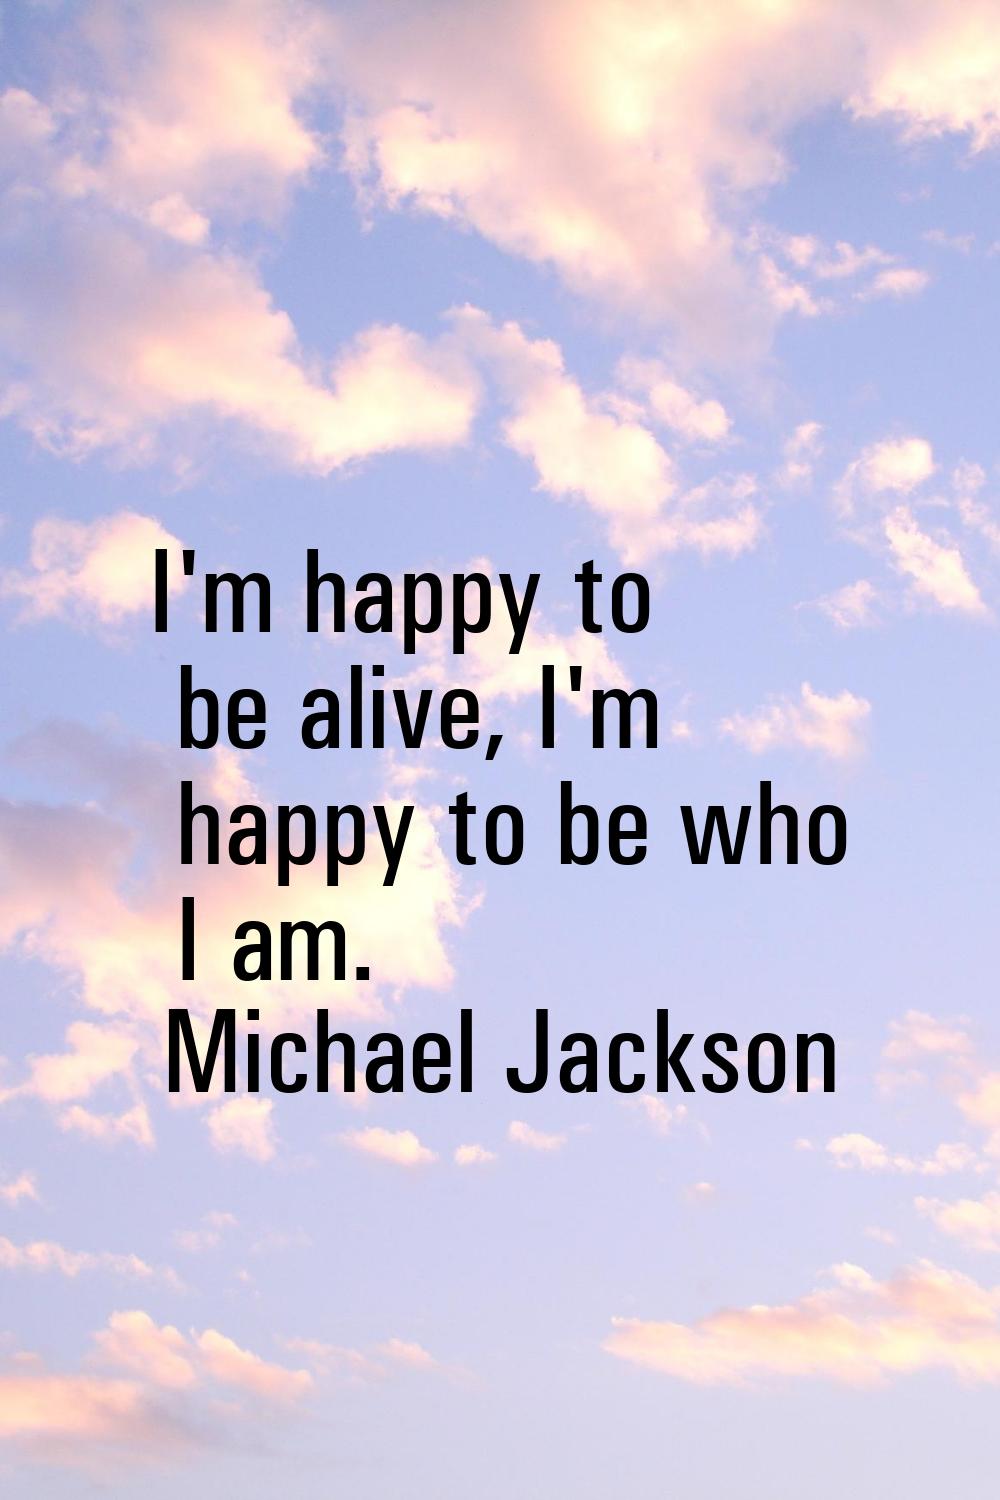 I'm happy to be alive, I'm happy to be who I am.